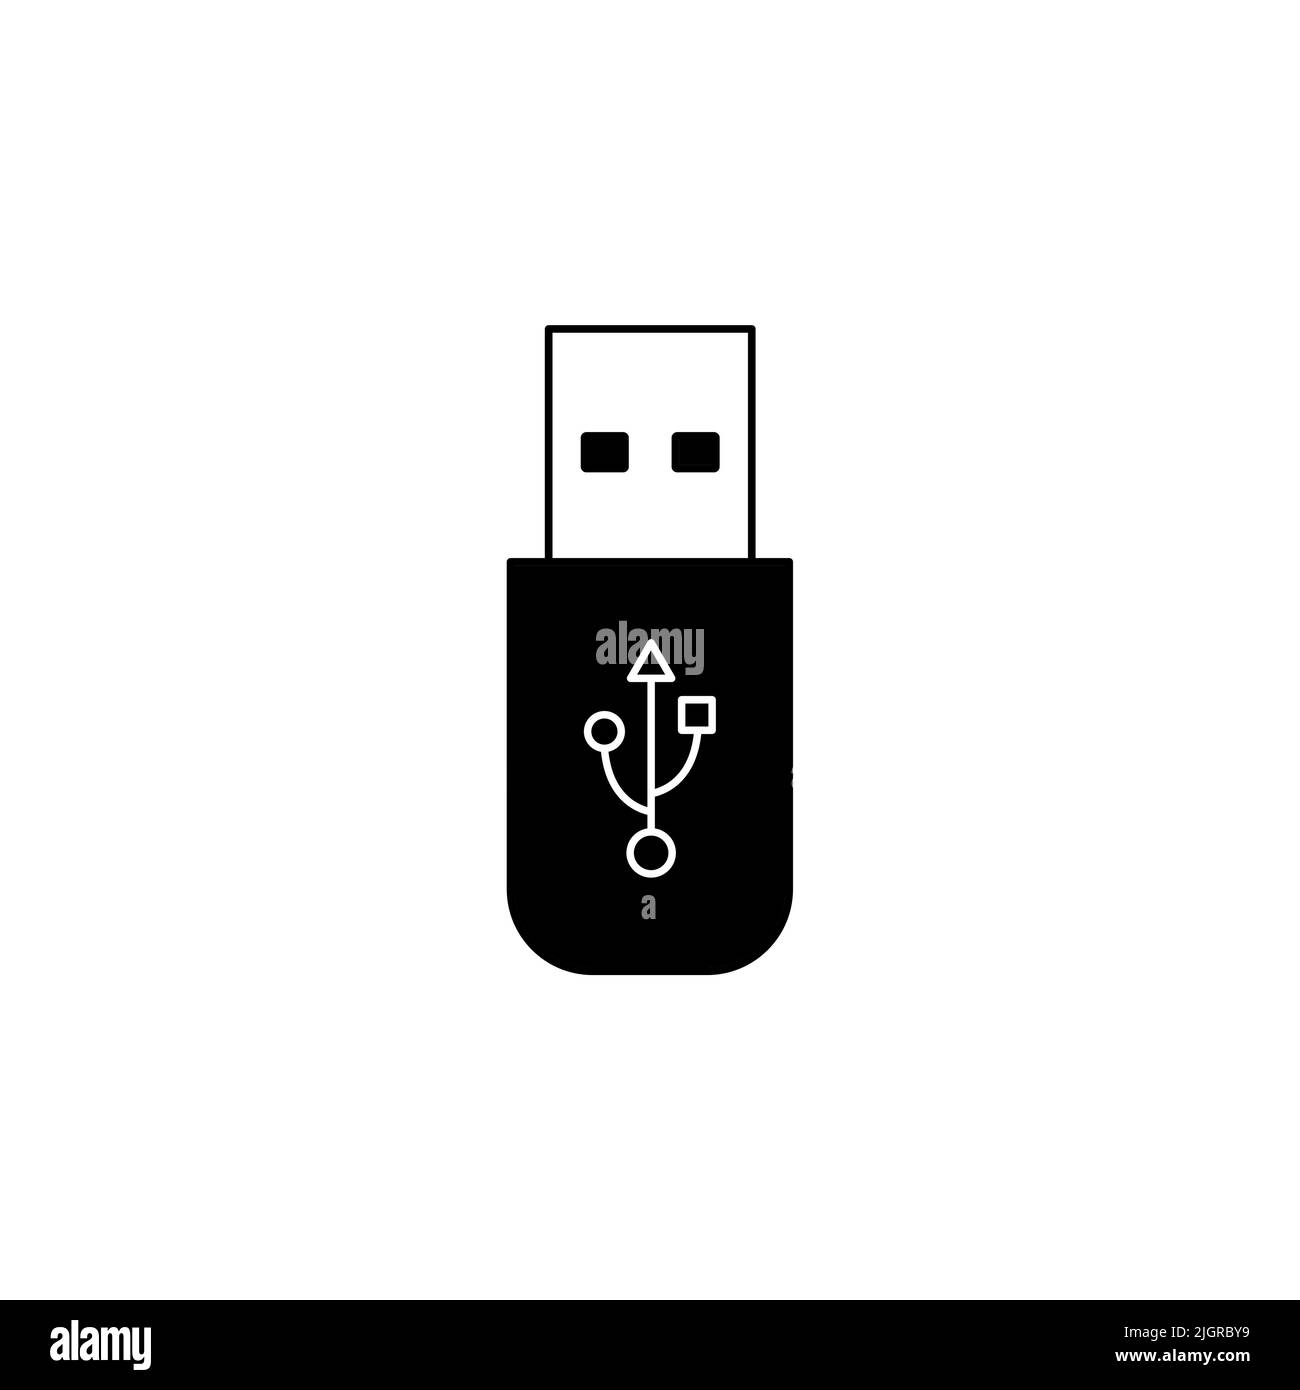 Usb flash drive black icon, memory stick icon. usb Icon. Flash memory symbol, web and computer icon Stock Vector